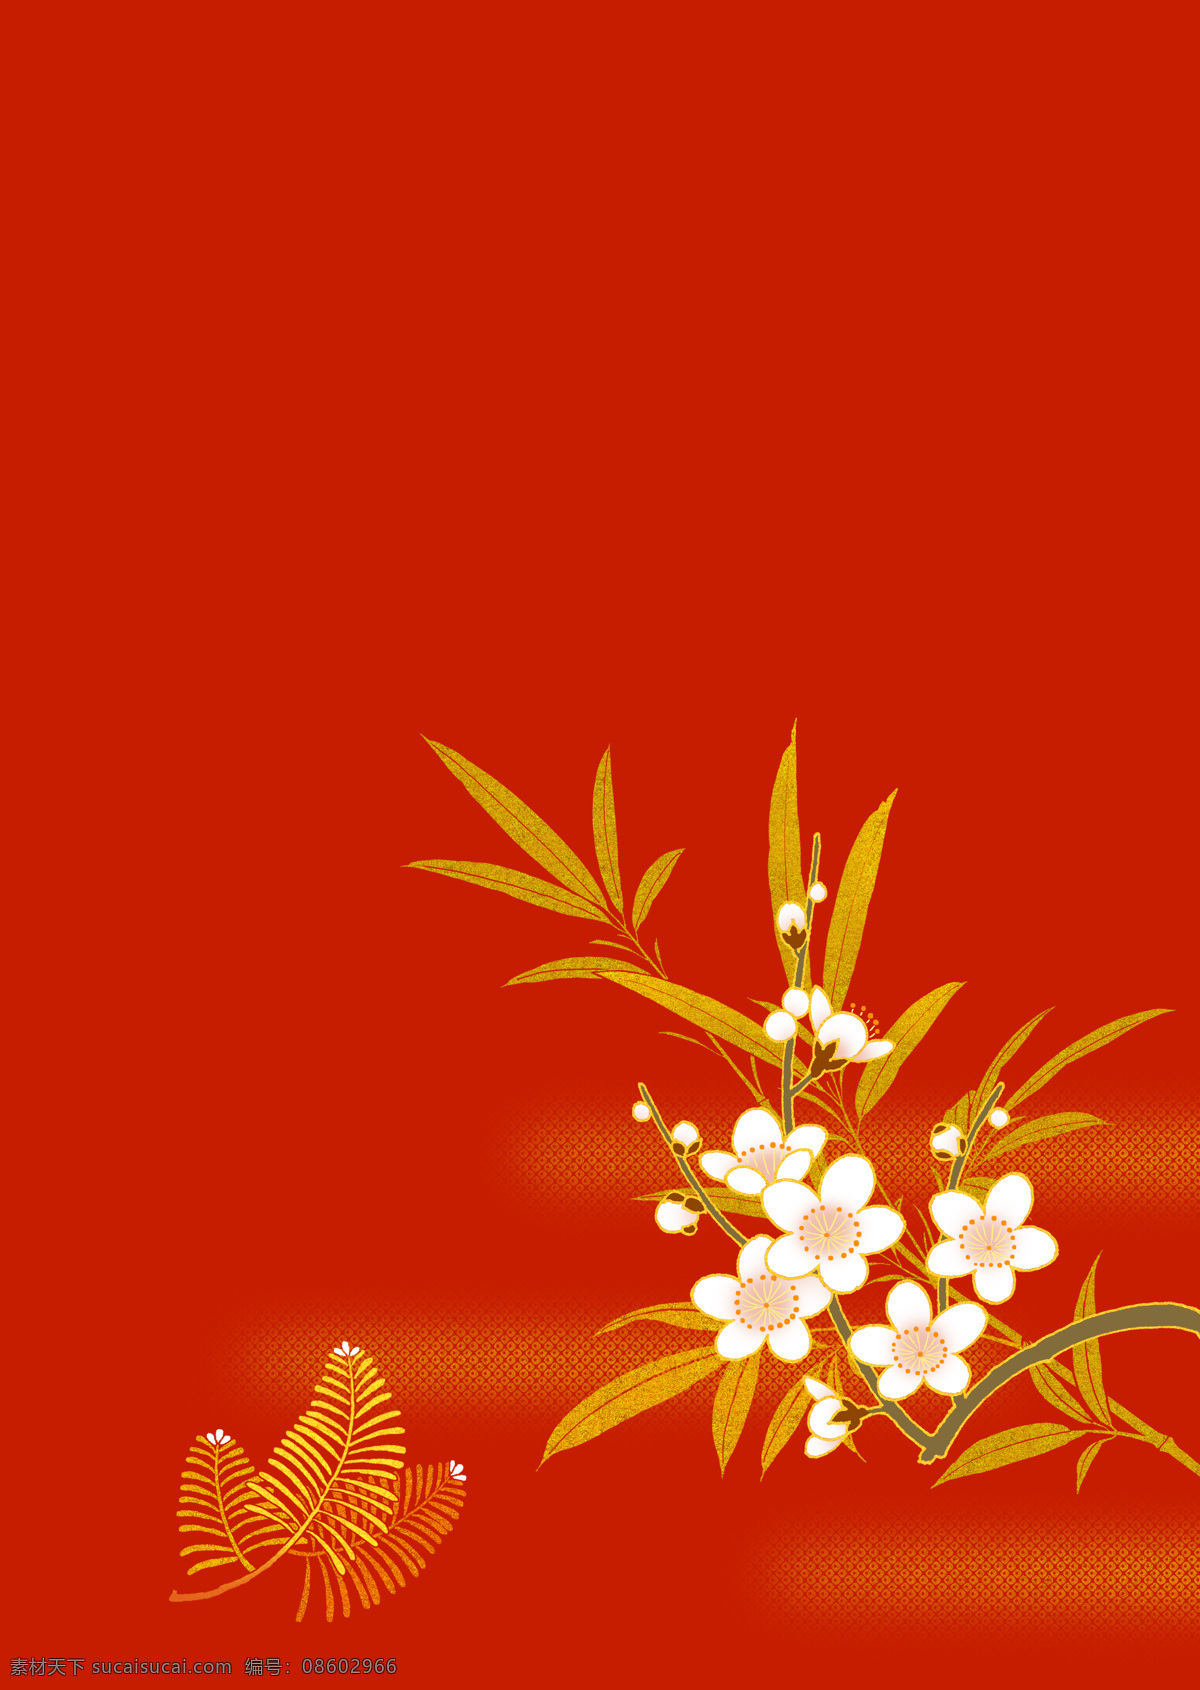 日本 风格 中 色彩 松 竹 梅 红色背景 适用 庆祝 宴会 花纹 底纹边框 背景底纹 设计图库